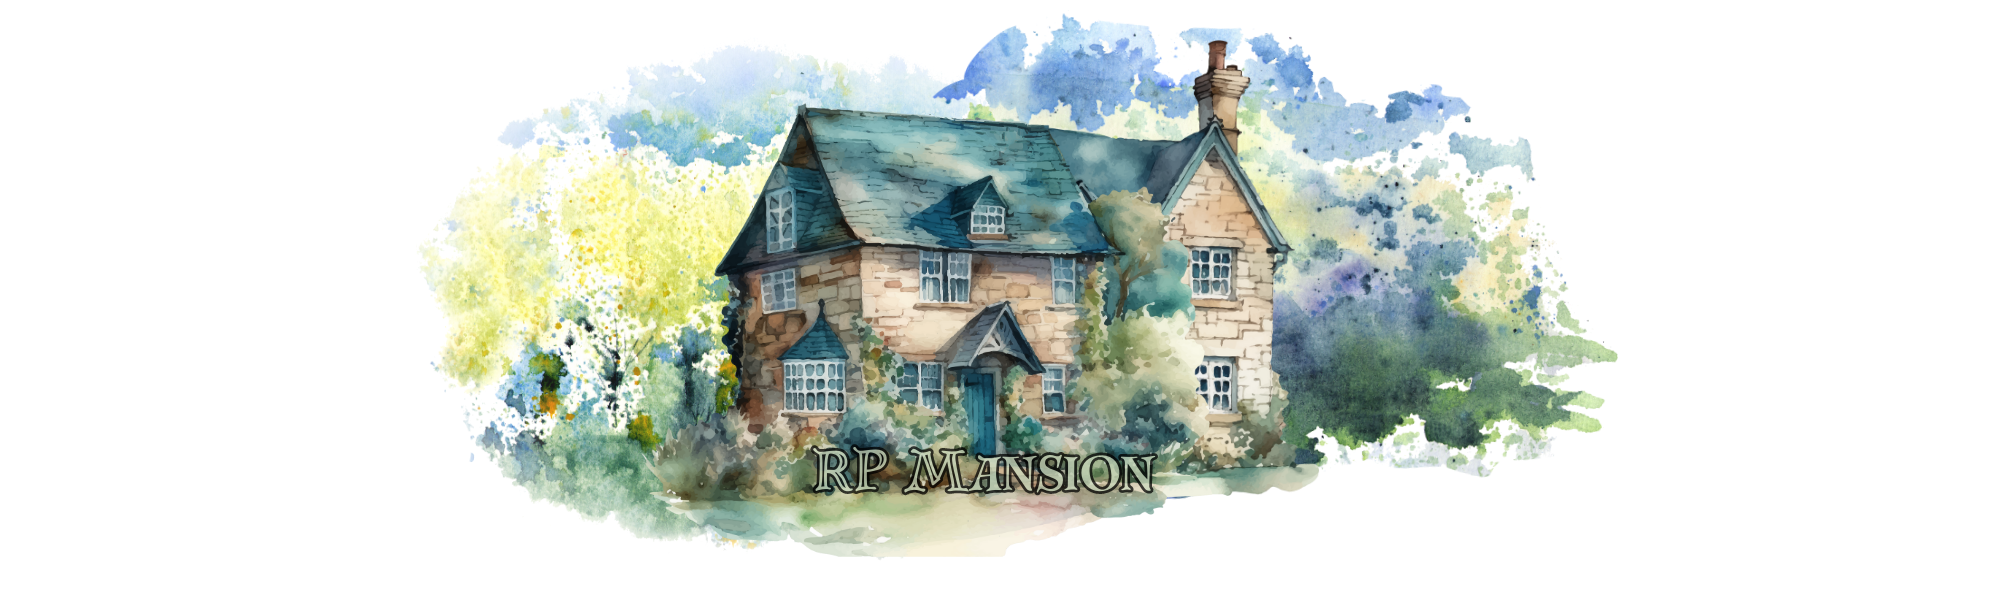 RP Mansion